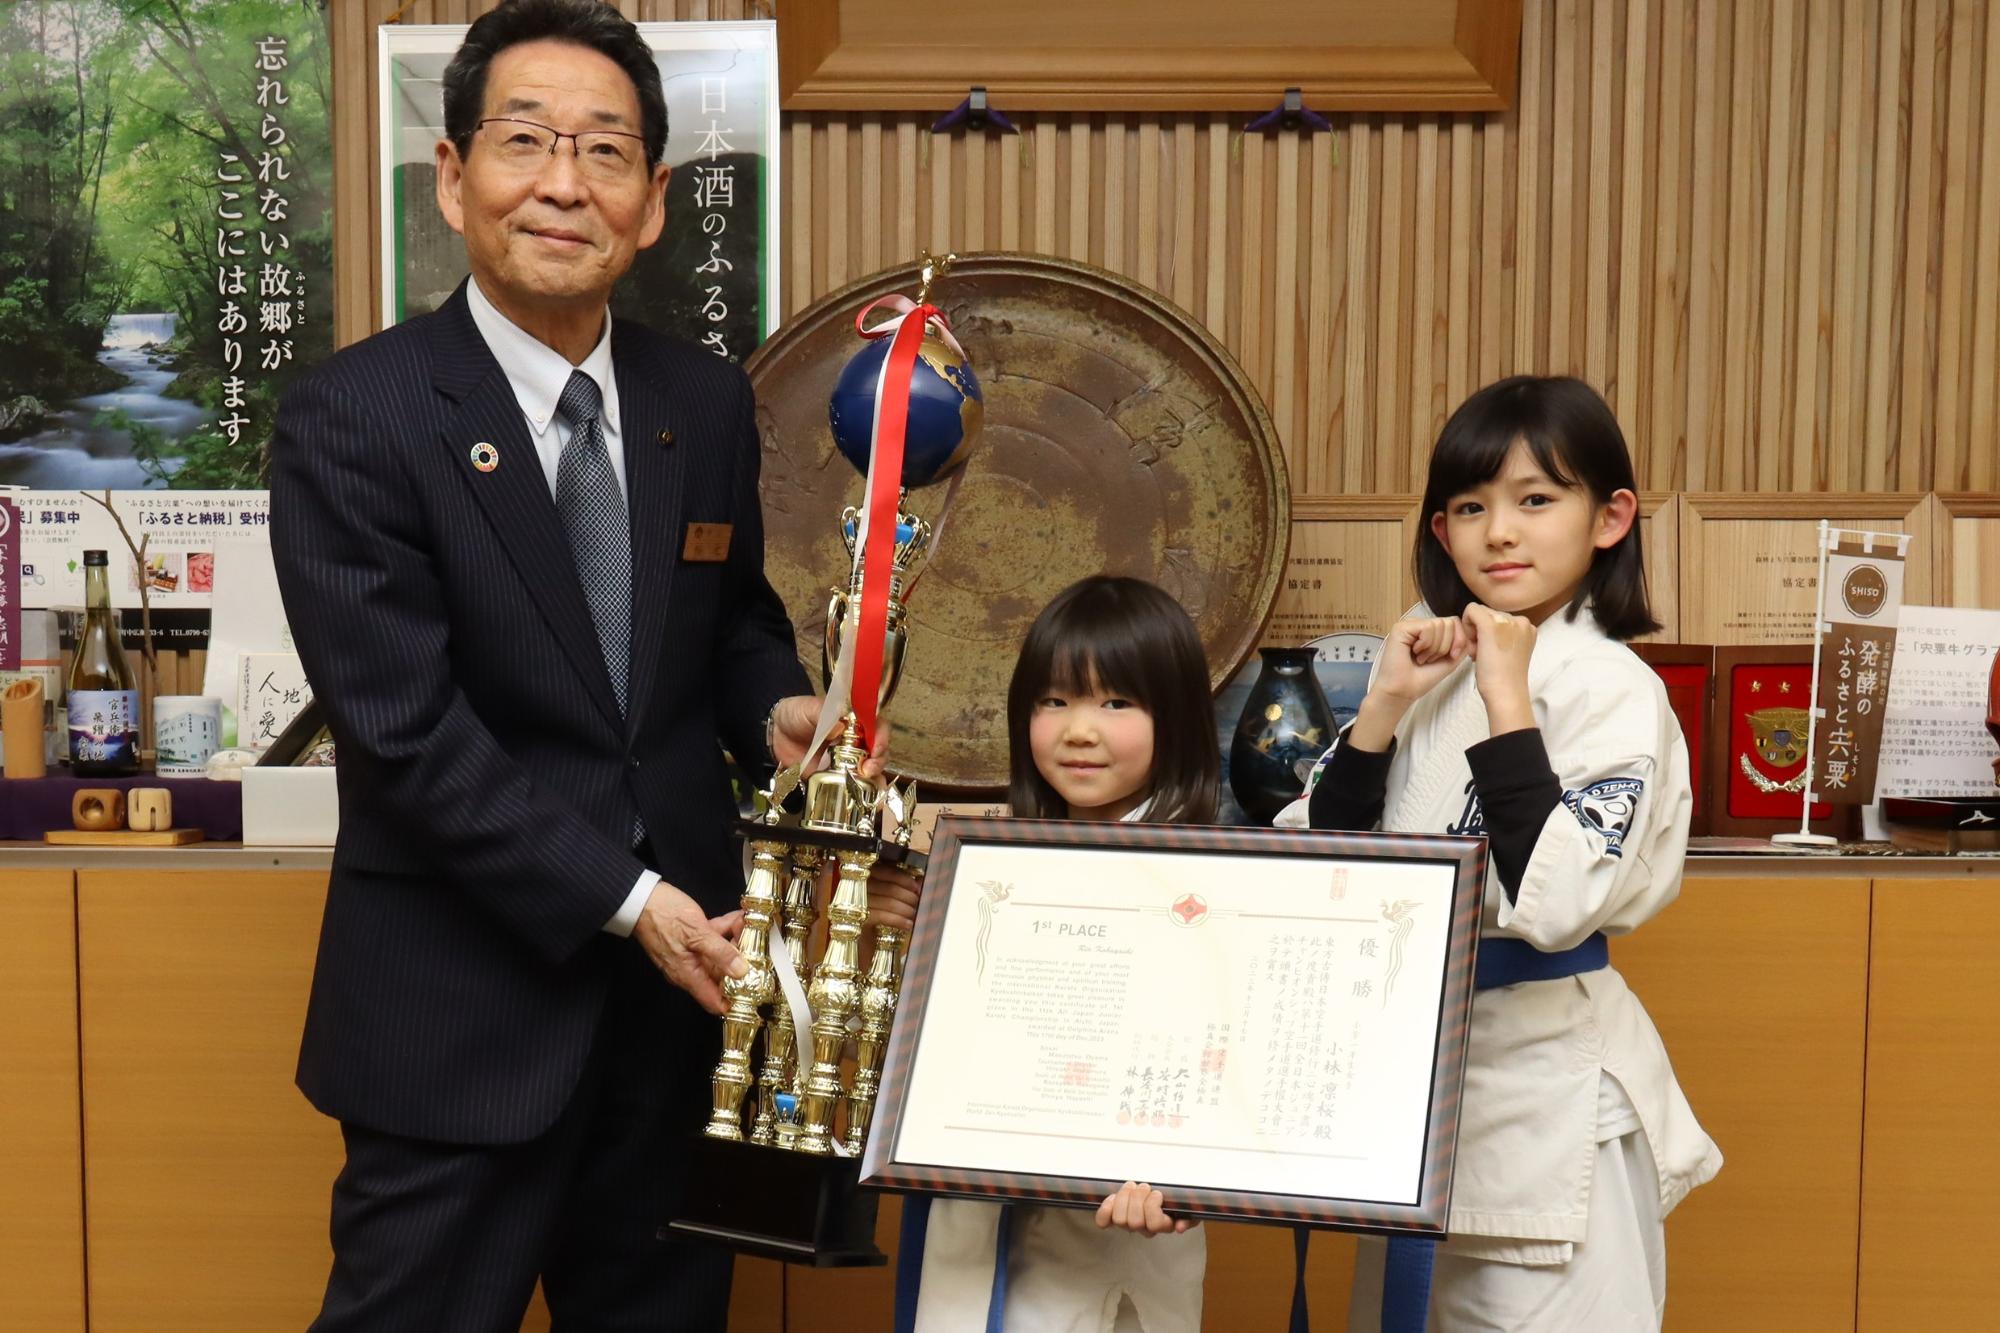 優勝トロフィーと賞状を手に持った小林さんを真ん中に、坂井さんと福元市長が隣に並んで記念撮影した写真